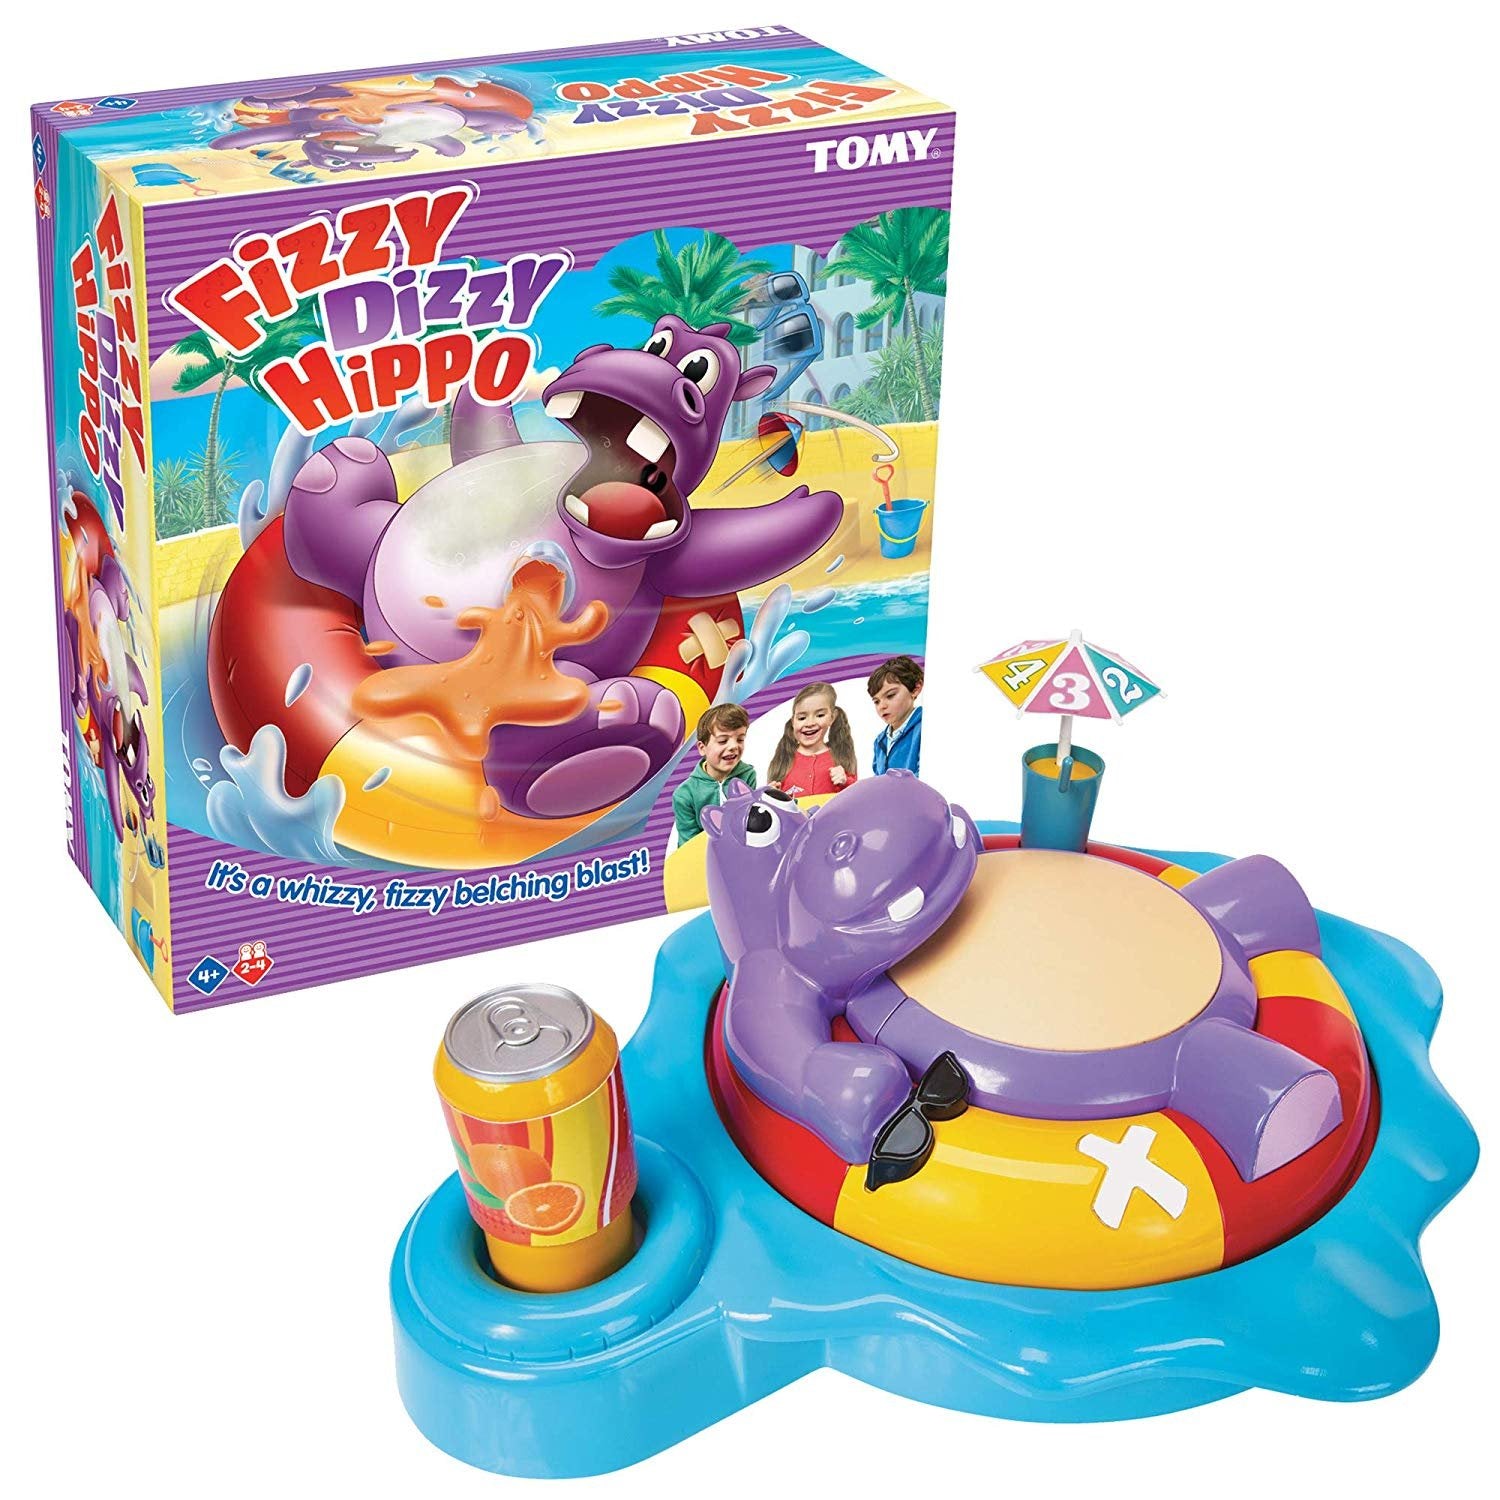 Fizzy dizzy hippo game